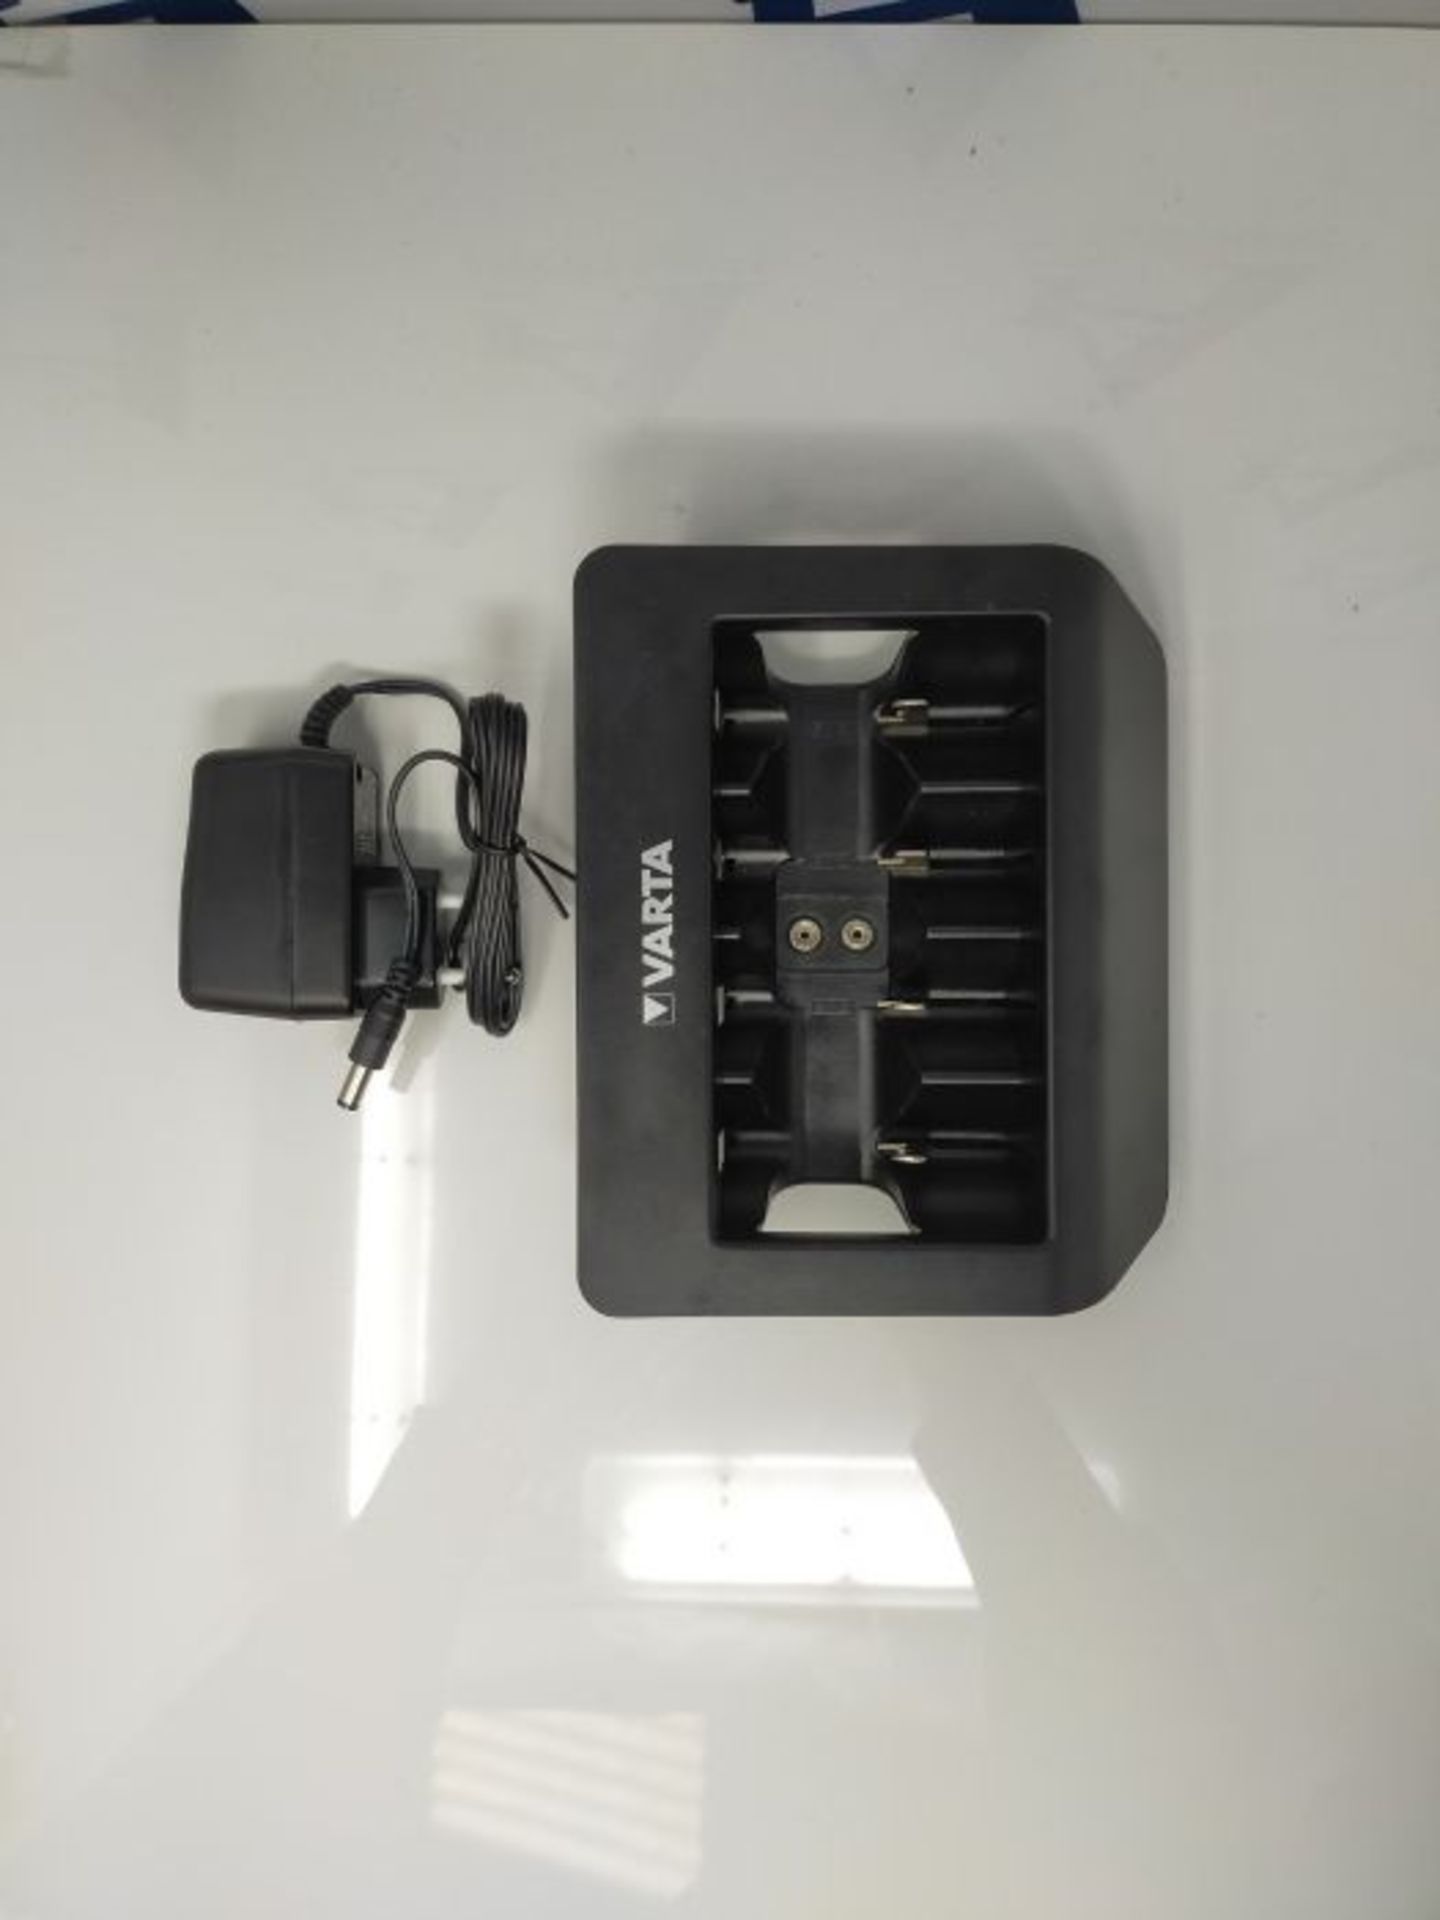 VARTA Universal Charger, Ladegerät für Akkus in AA/AAA/9V und USB Geräte, Einzelsc - Image 3 of 3